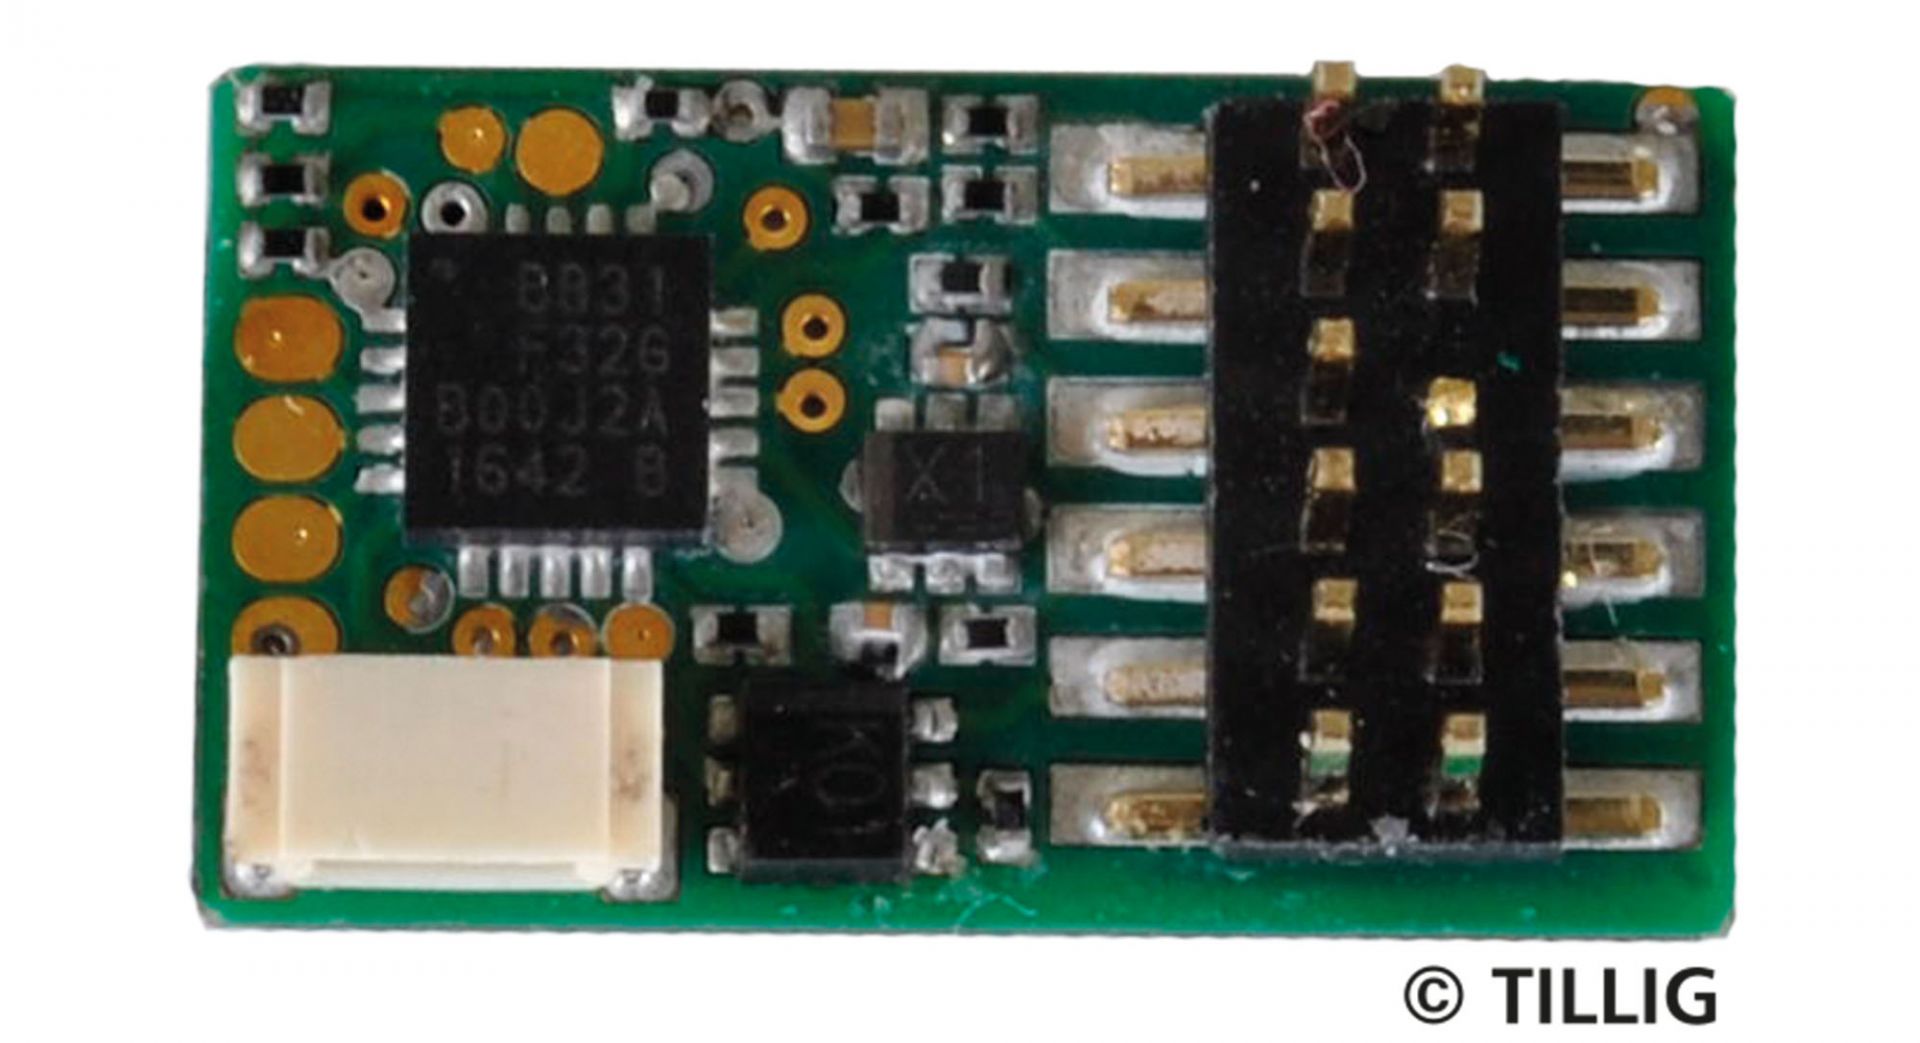 66035 | PluX 12 digital decoder